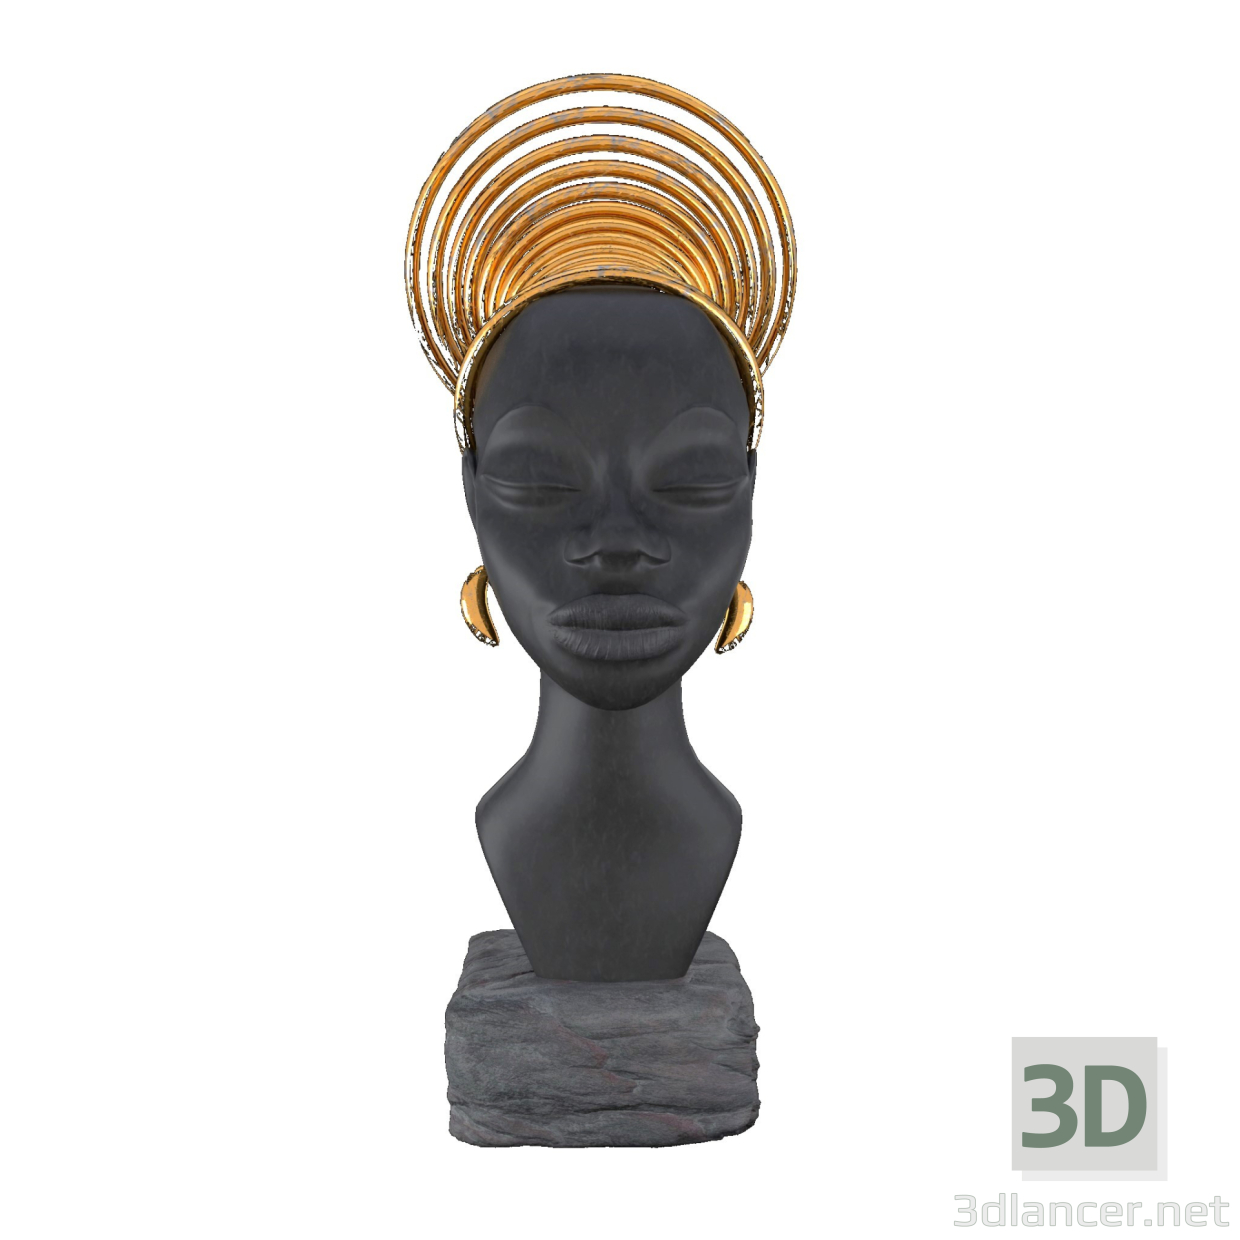 3d SCULPTURE OF AN AFRICAN WOMAN model buy - render